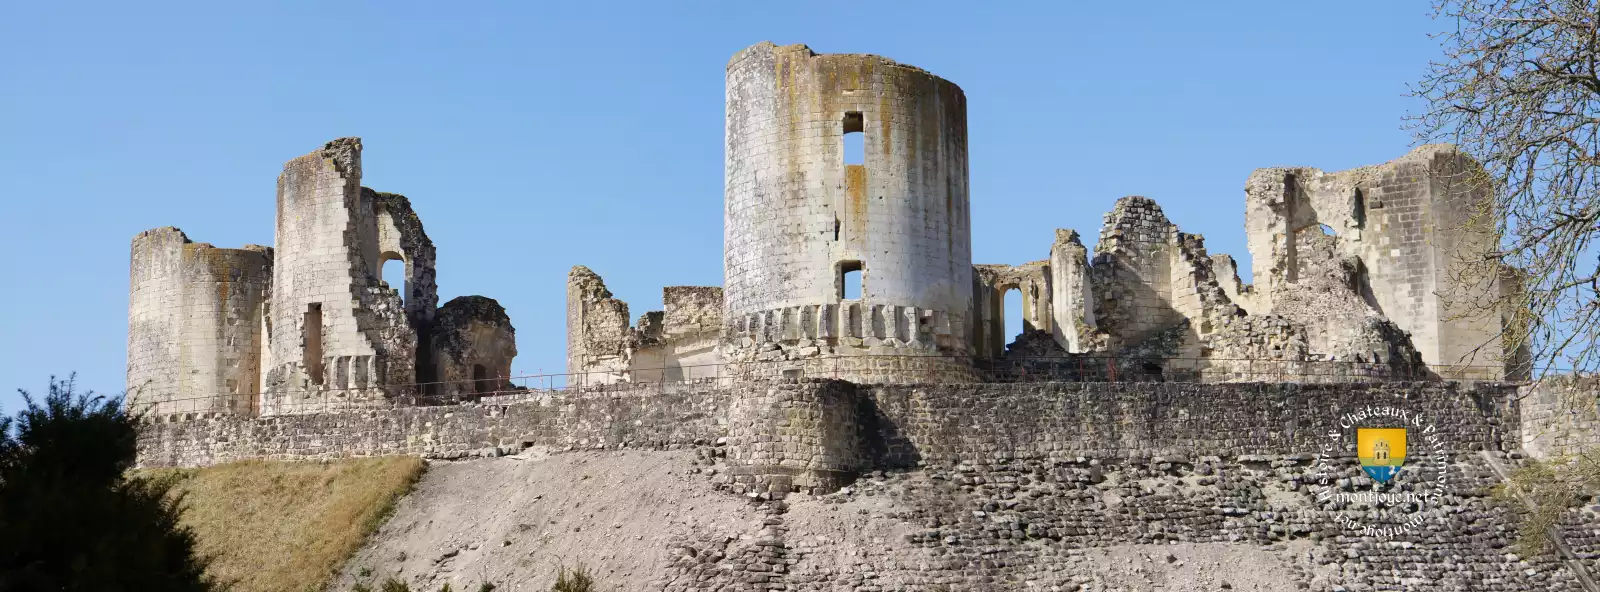 chateau medieval de fere en tardenois